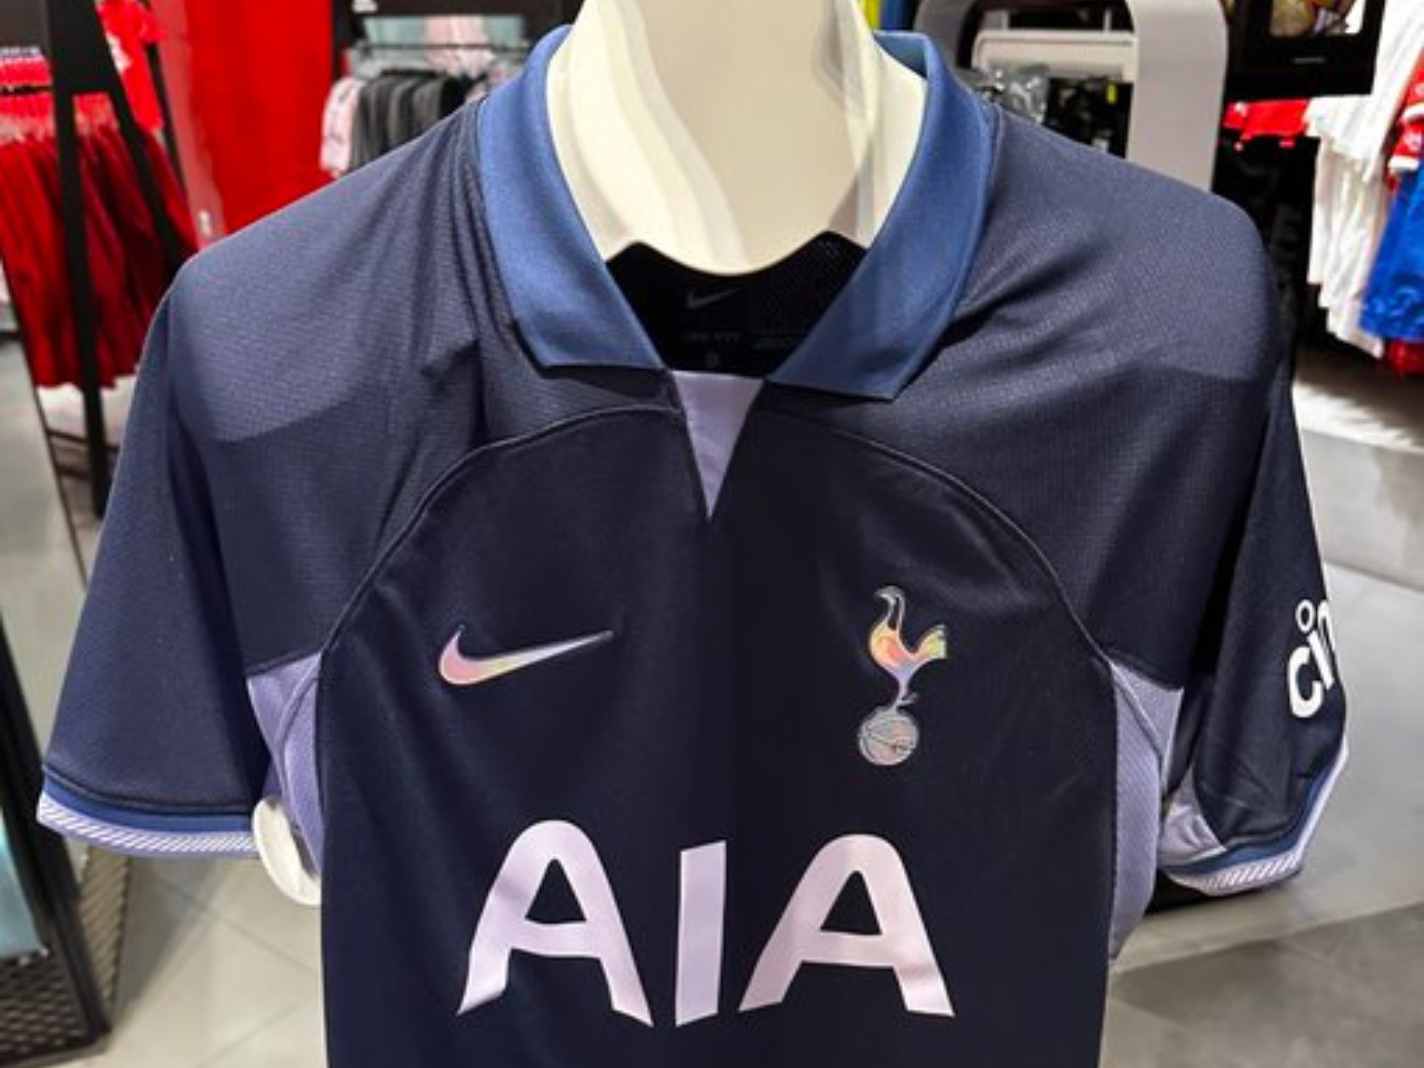 Leaked 23/24 Tottenham Away Kit Fails to Hit the Mark – ‘Like a Batman Costume’